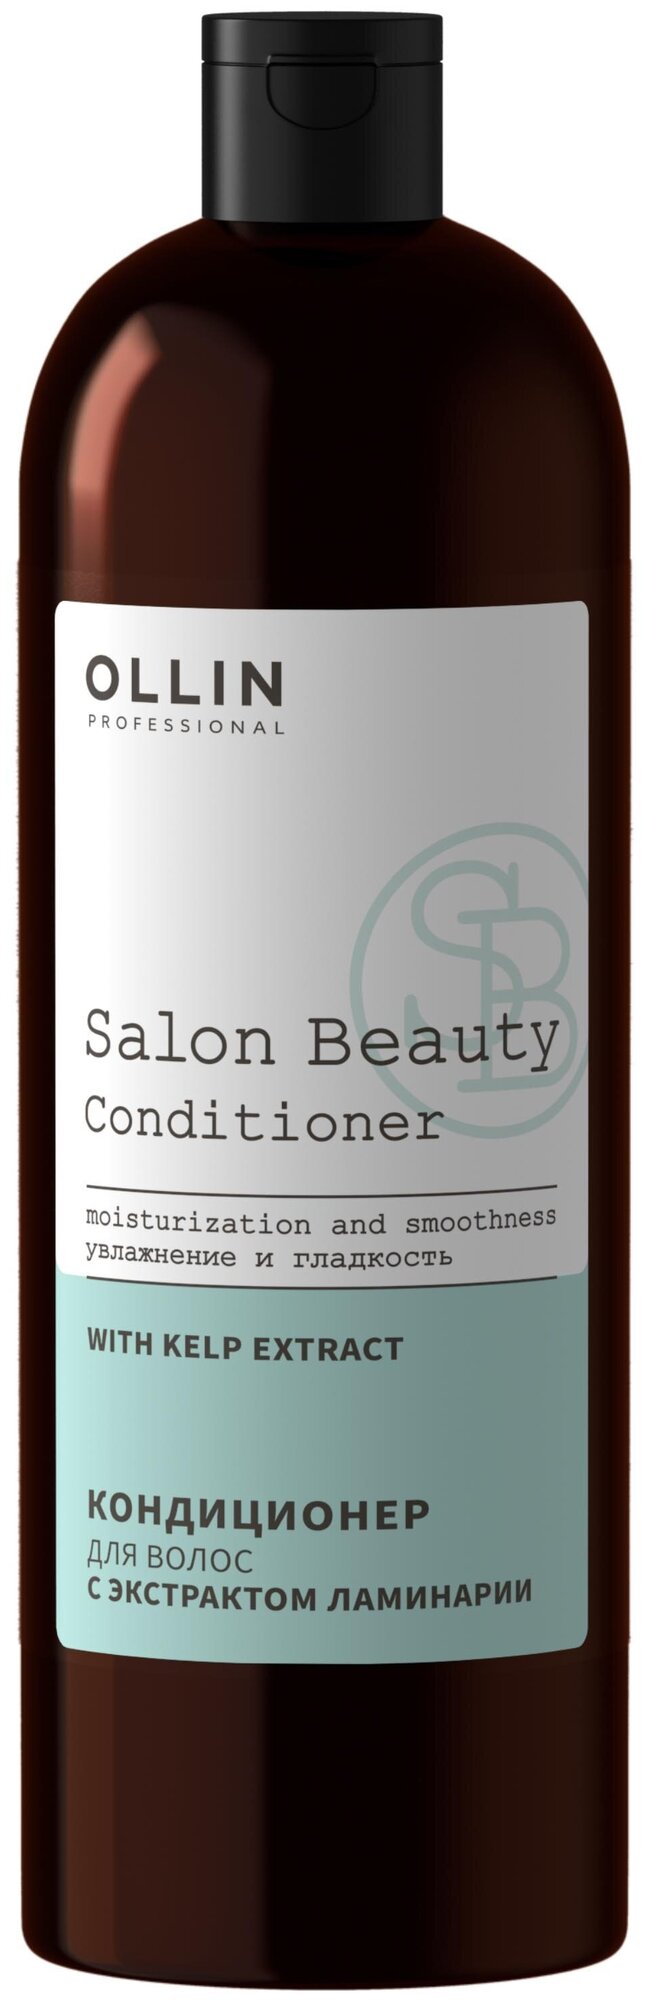 Ollin, Кондиционер для волос с экстрактом ламинарии SALON BEAUTY, 1000 мл